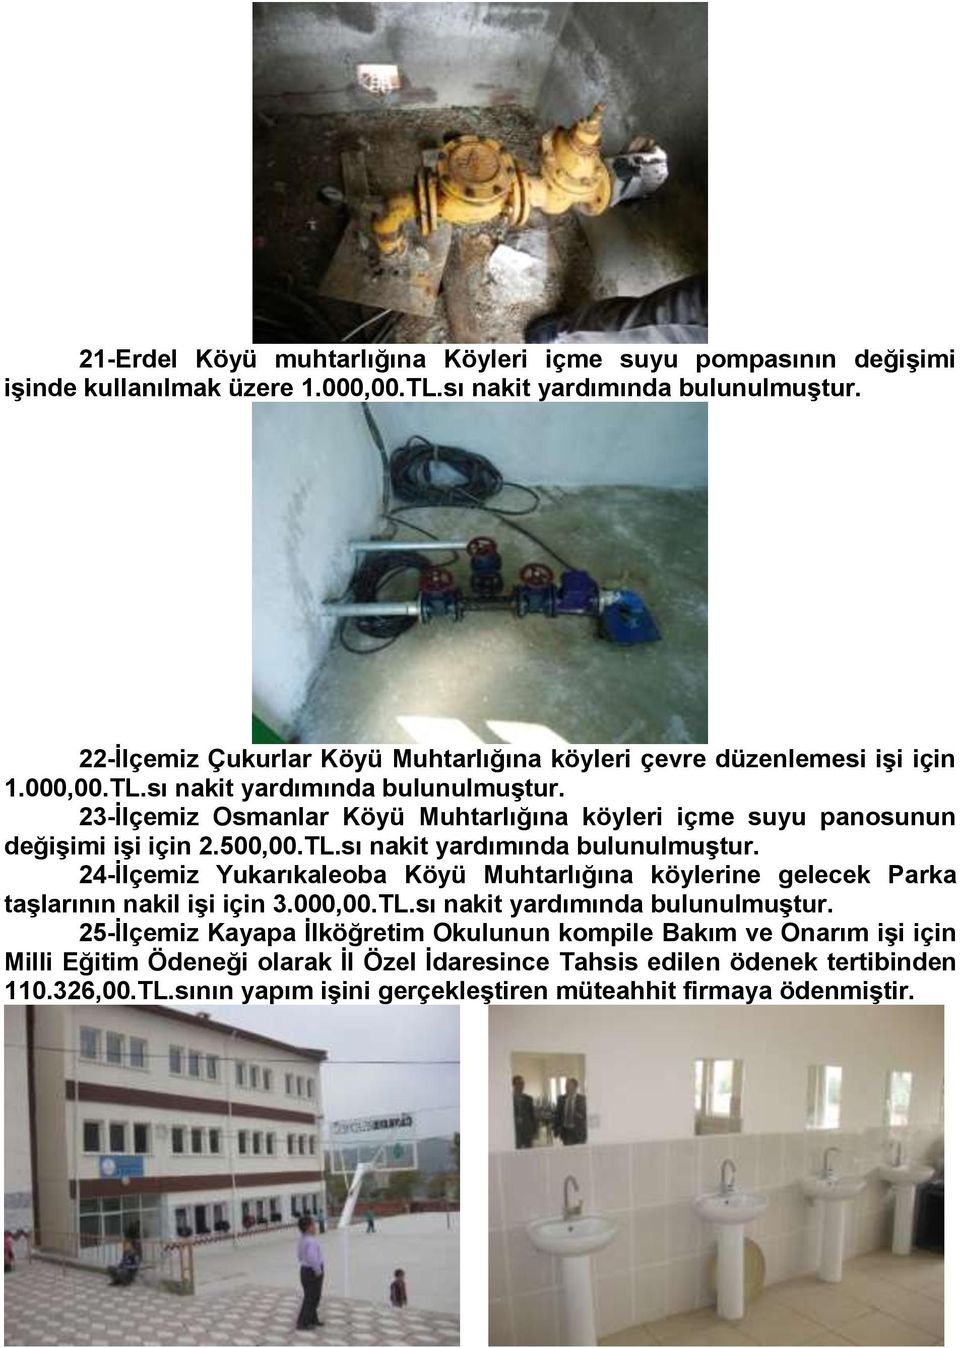 23-Ġlçemiz Osmanlar Köyü Muhtarlığına köyleri içme suyu panosunun değiģimi iģi için 2.500,00.TL.sı nakit yardımında bulunulmuģtur.